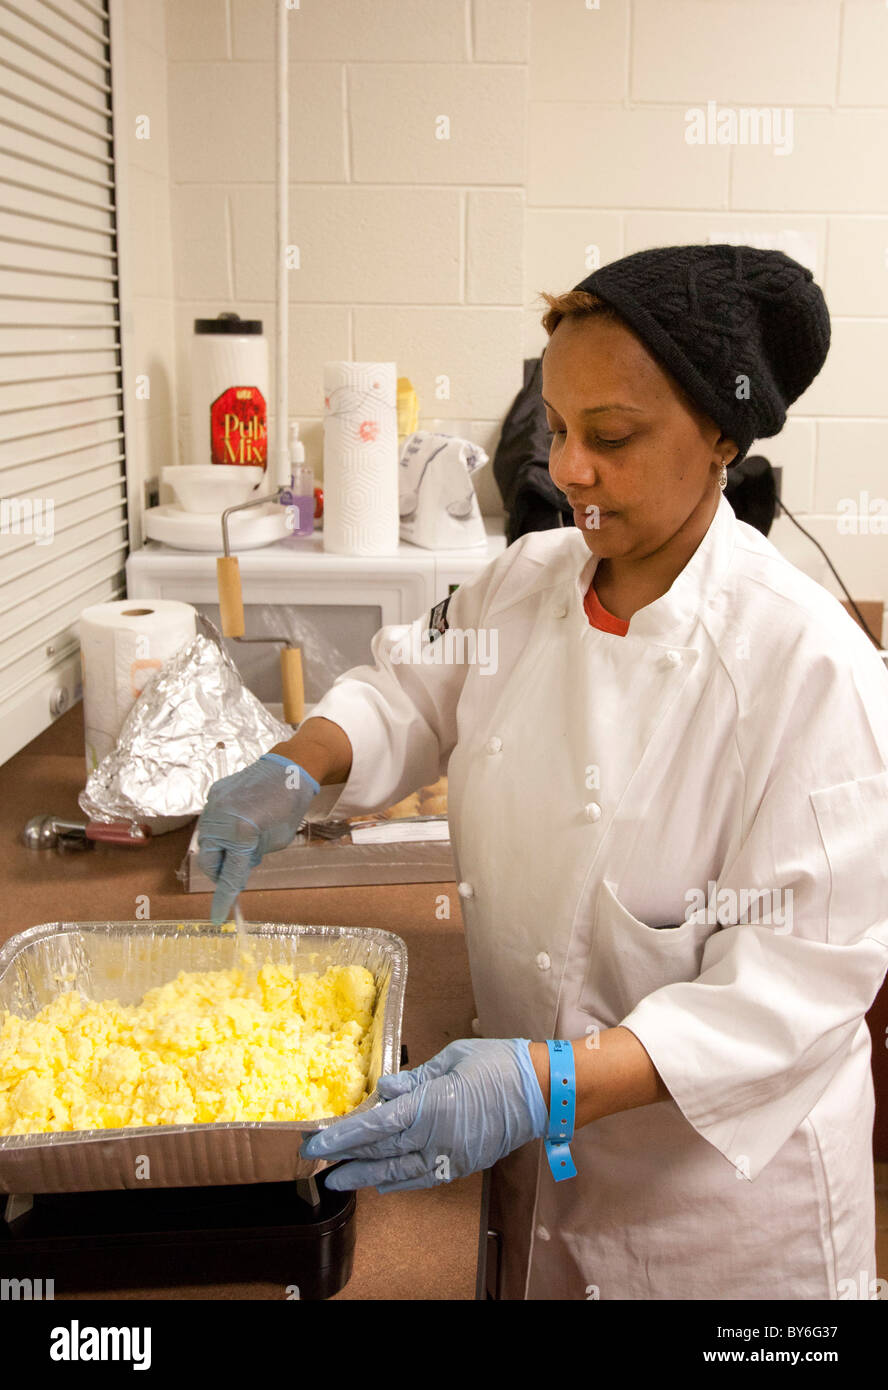 Mount Clemens, Michigan - Un petit-déjeuner cuisiniers bénévoles pour les personnes sans-abri sur la maison de Martin Luther King. Banque D'Images